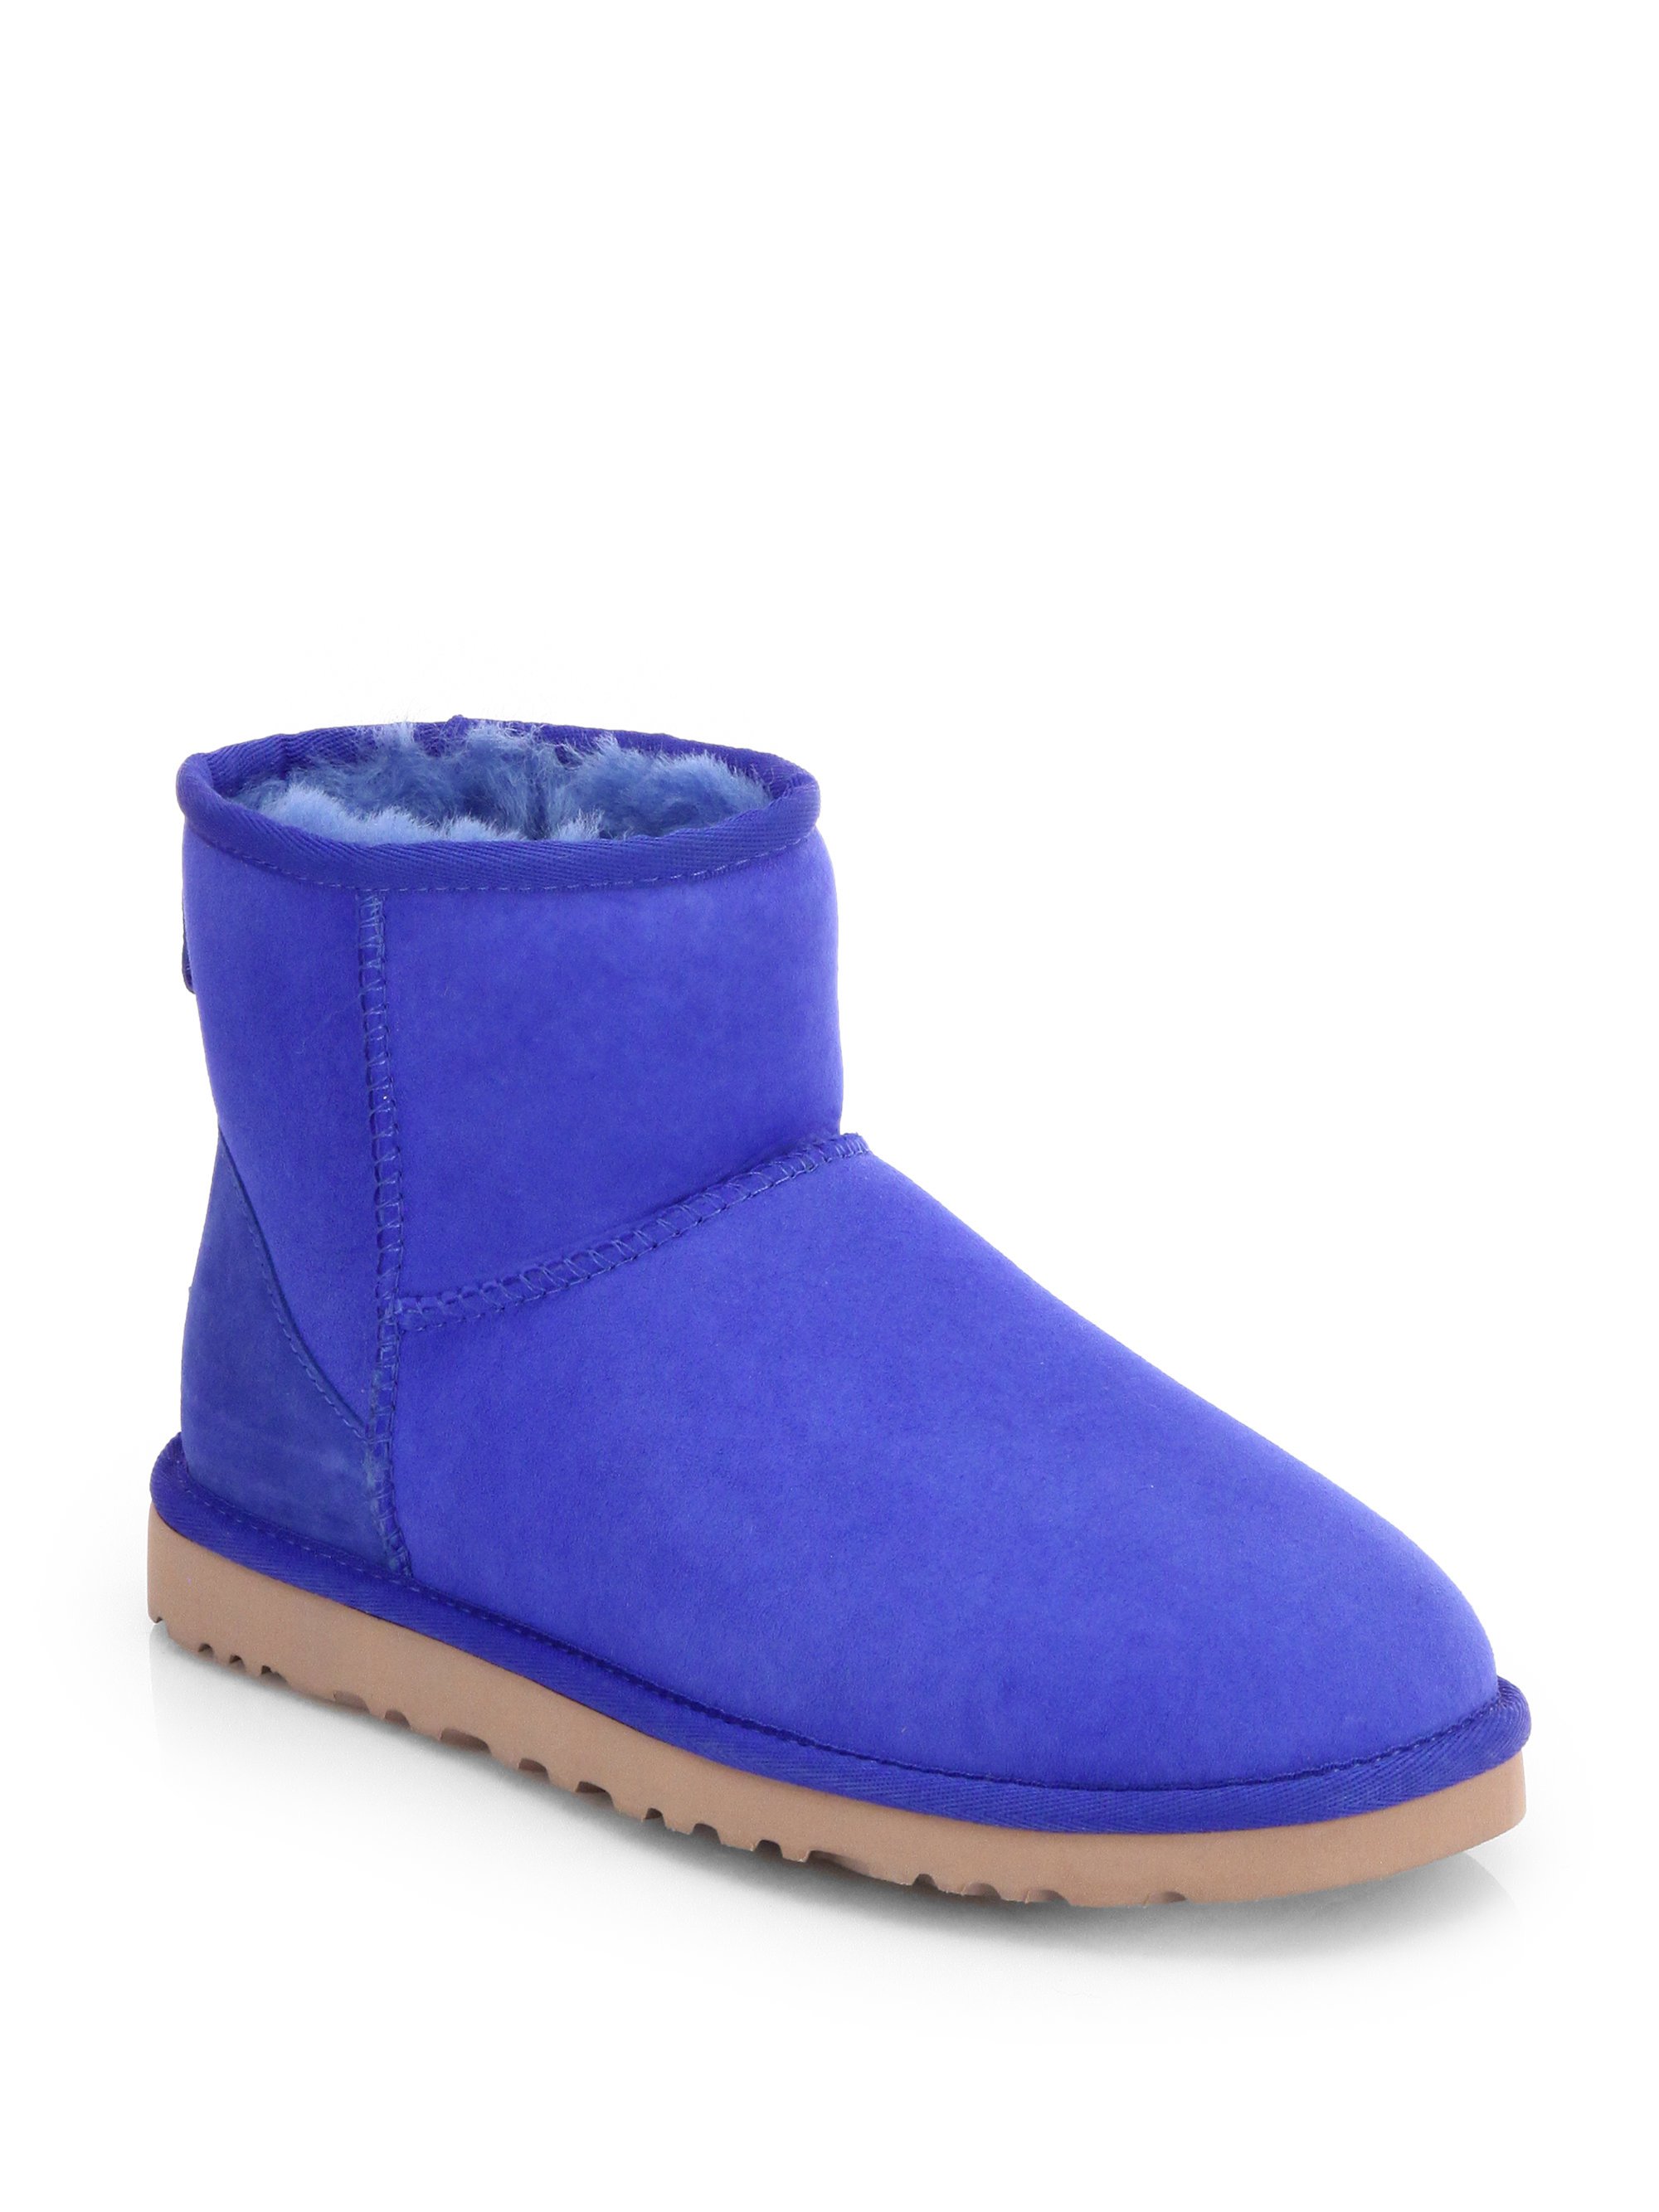 blue mini ugg boots